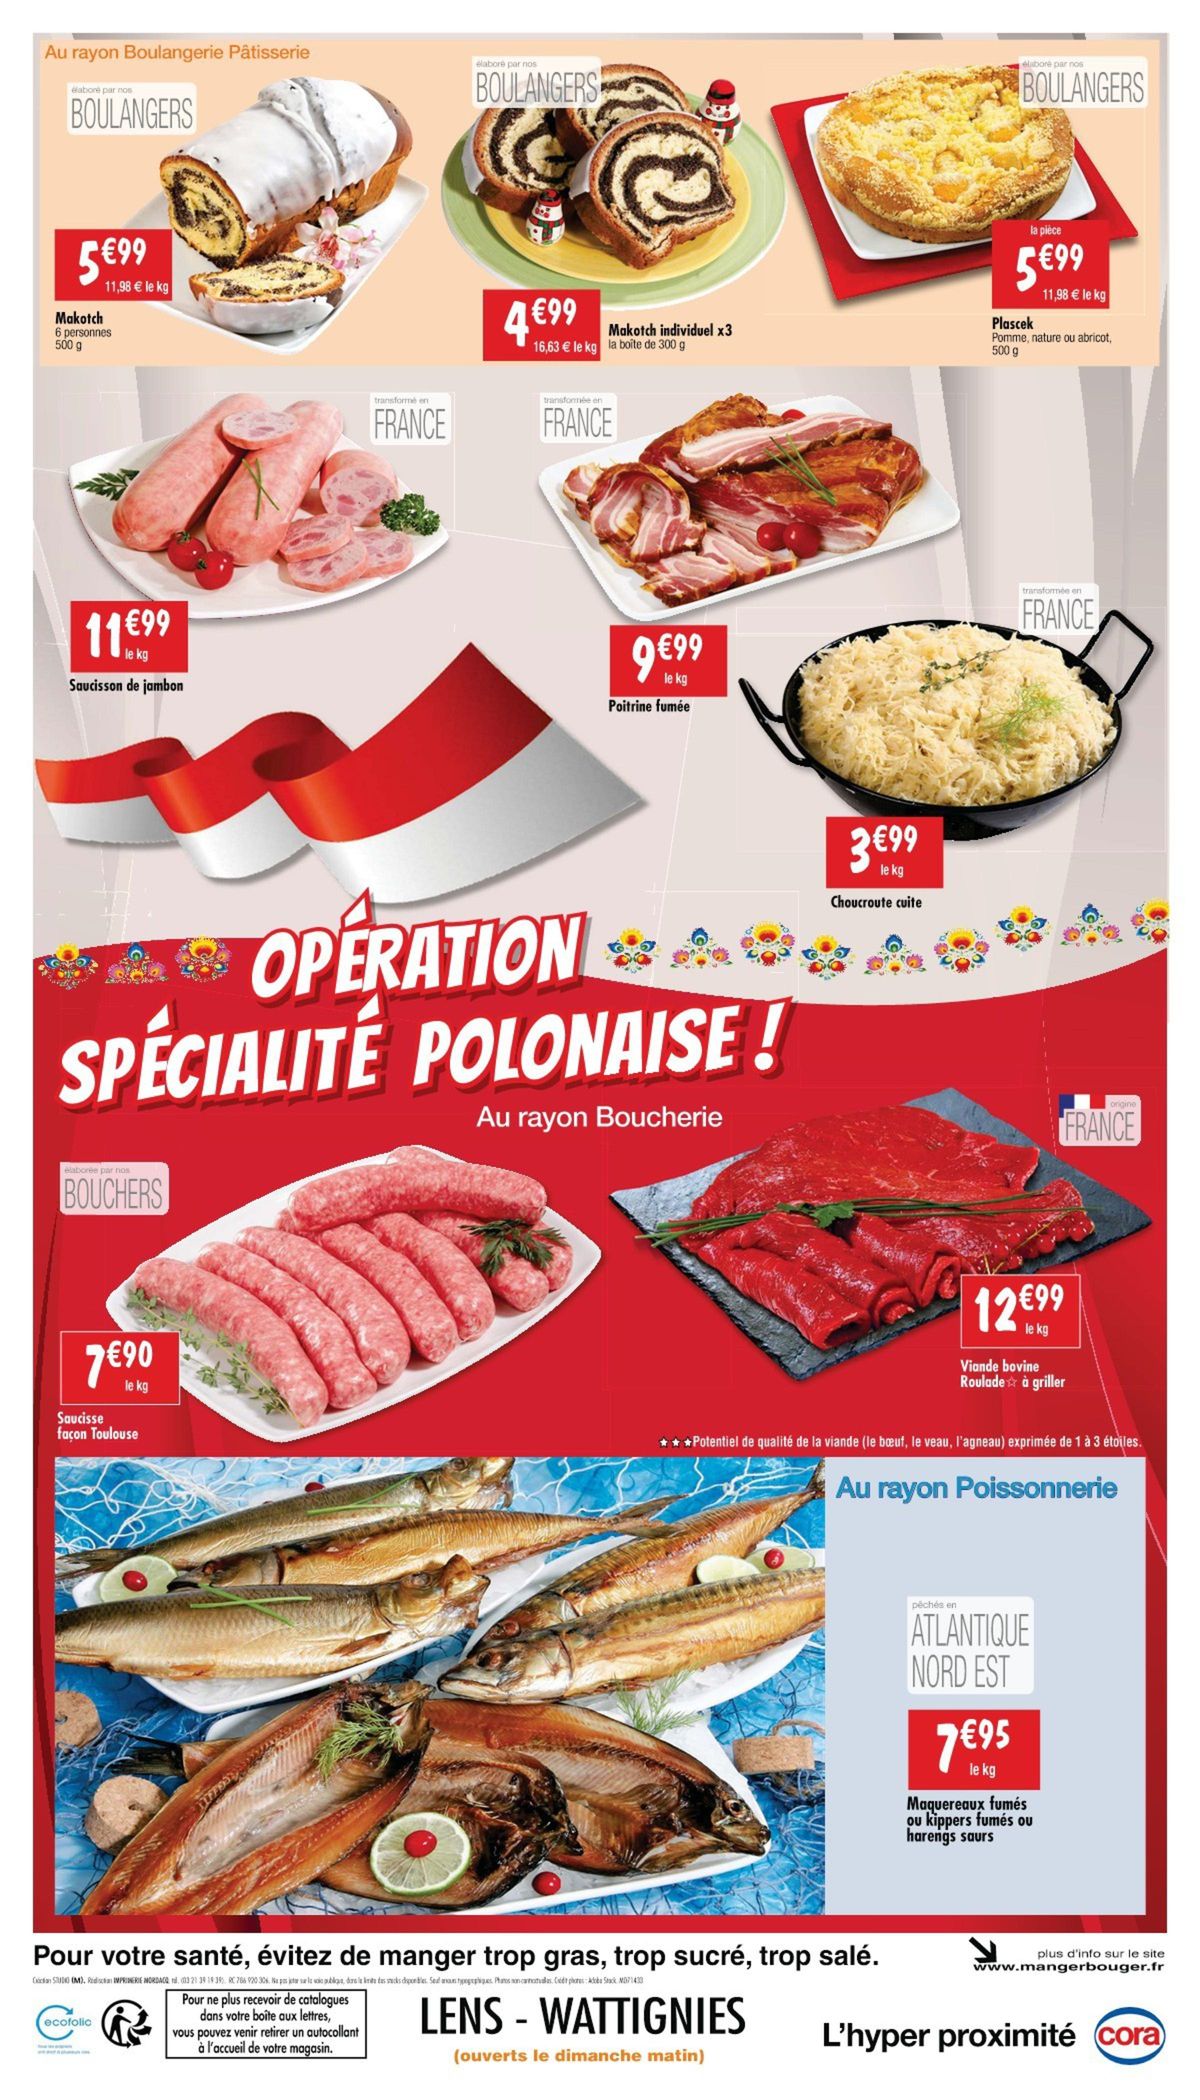 Catalogue Opération spécialité polonaise !, page 00002